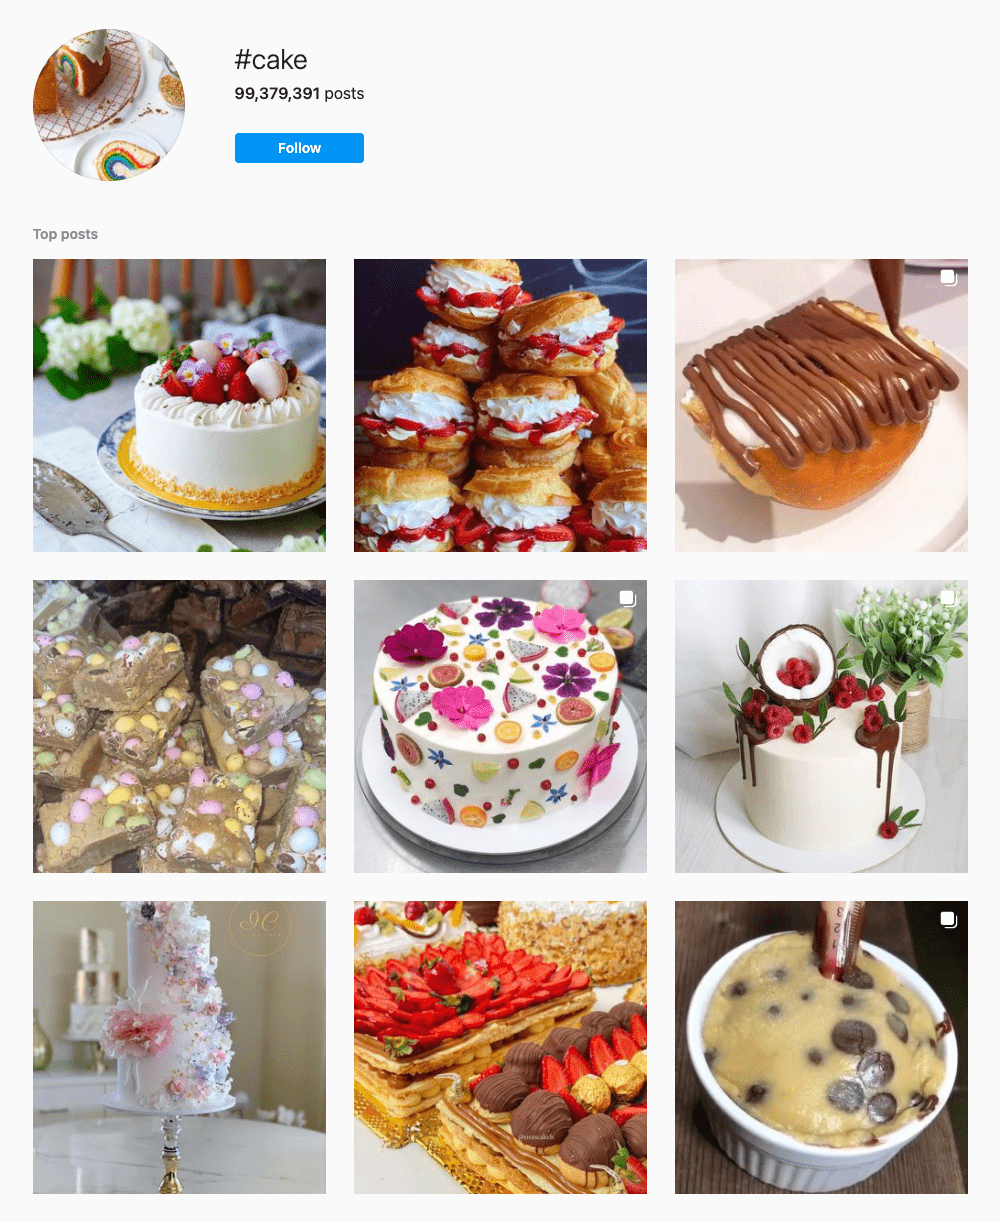 #cake Hashtags for Instagram